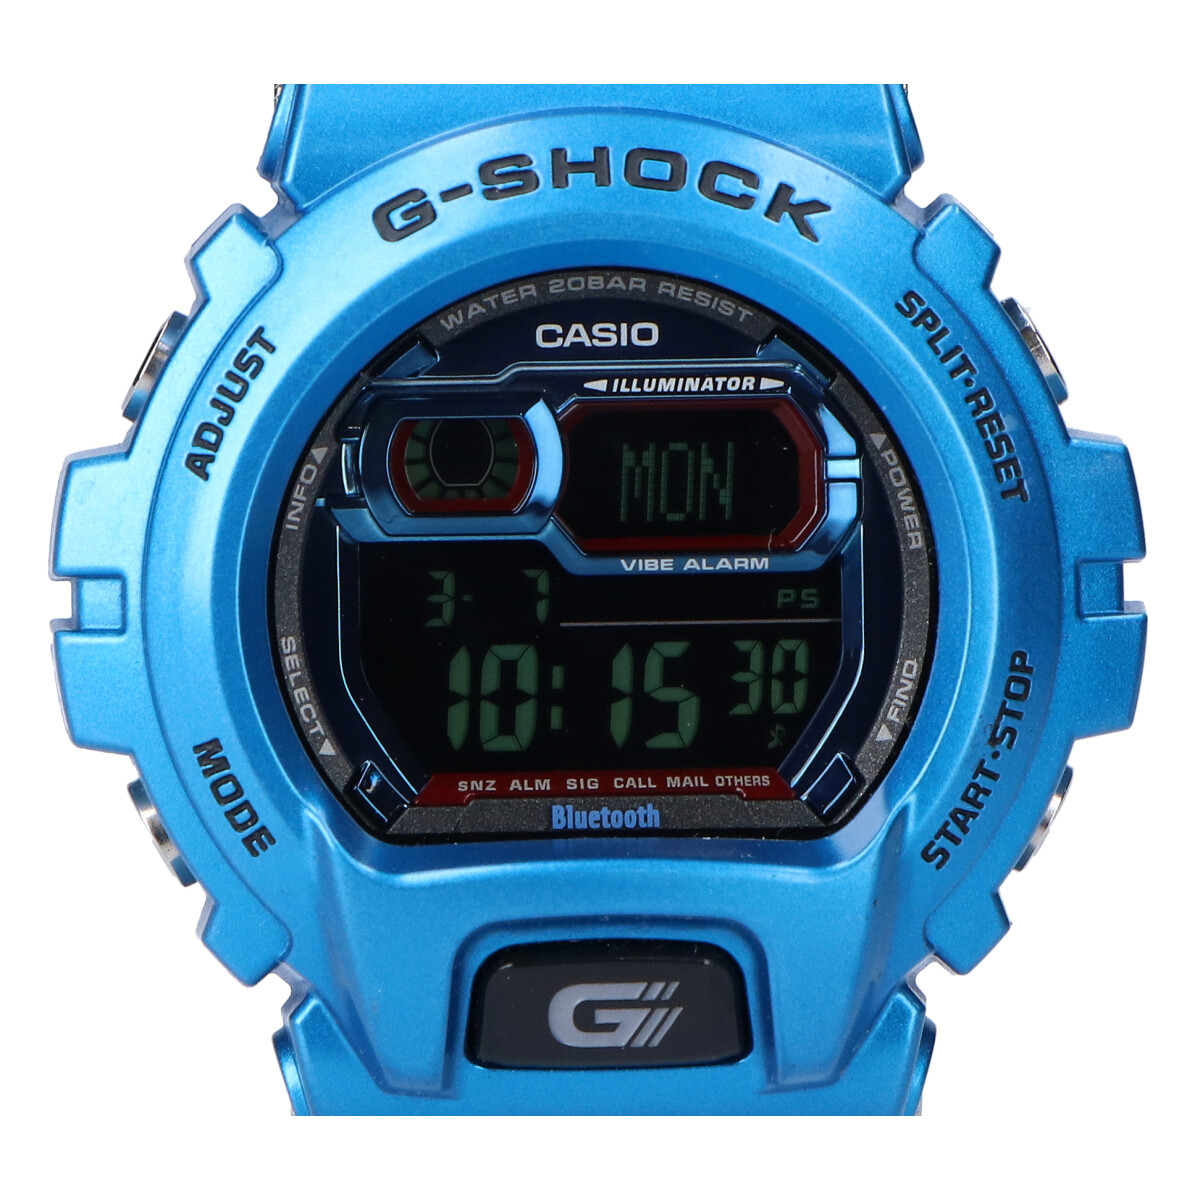 ジーショックのGB-X6900B-2JF Bluetooth対応 デジタル腕時計の買取実績です。